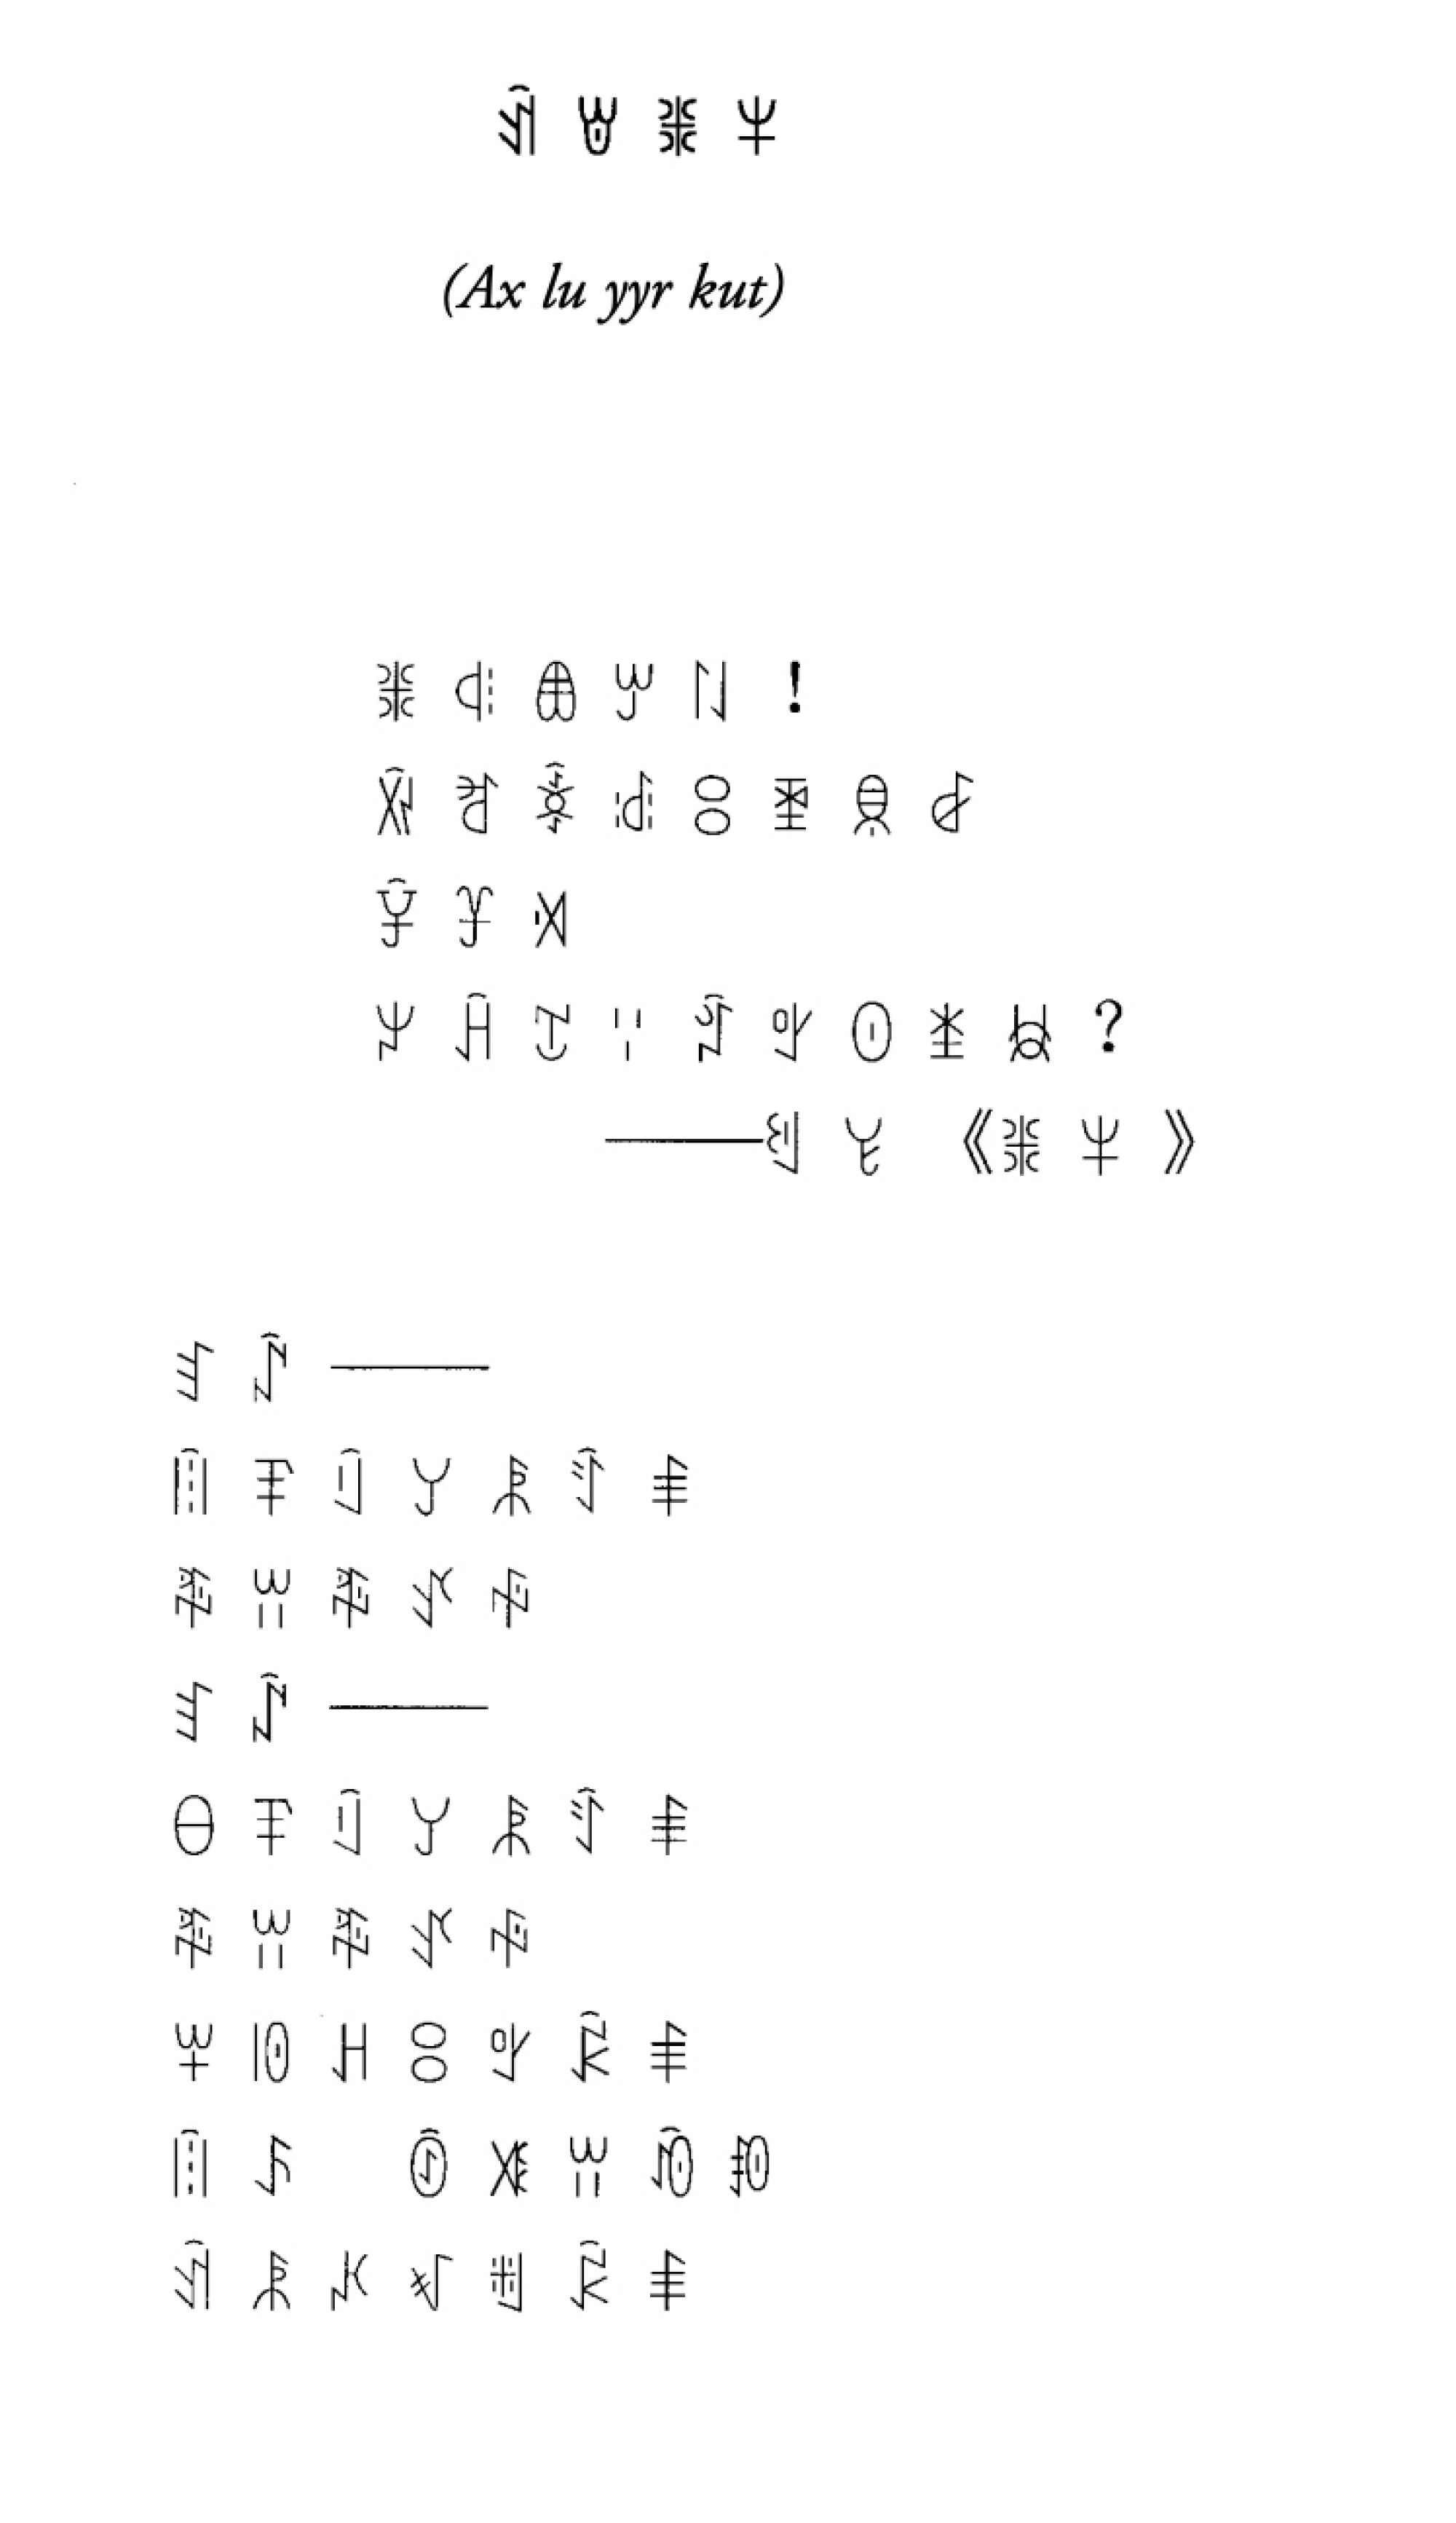 An excerpt from Aku Wuwu’s poem “Calling Back the Soul of Zhyge Alu” in Nuosu script.